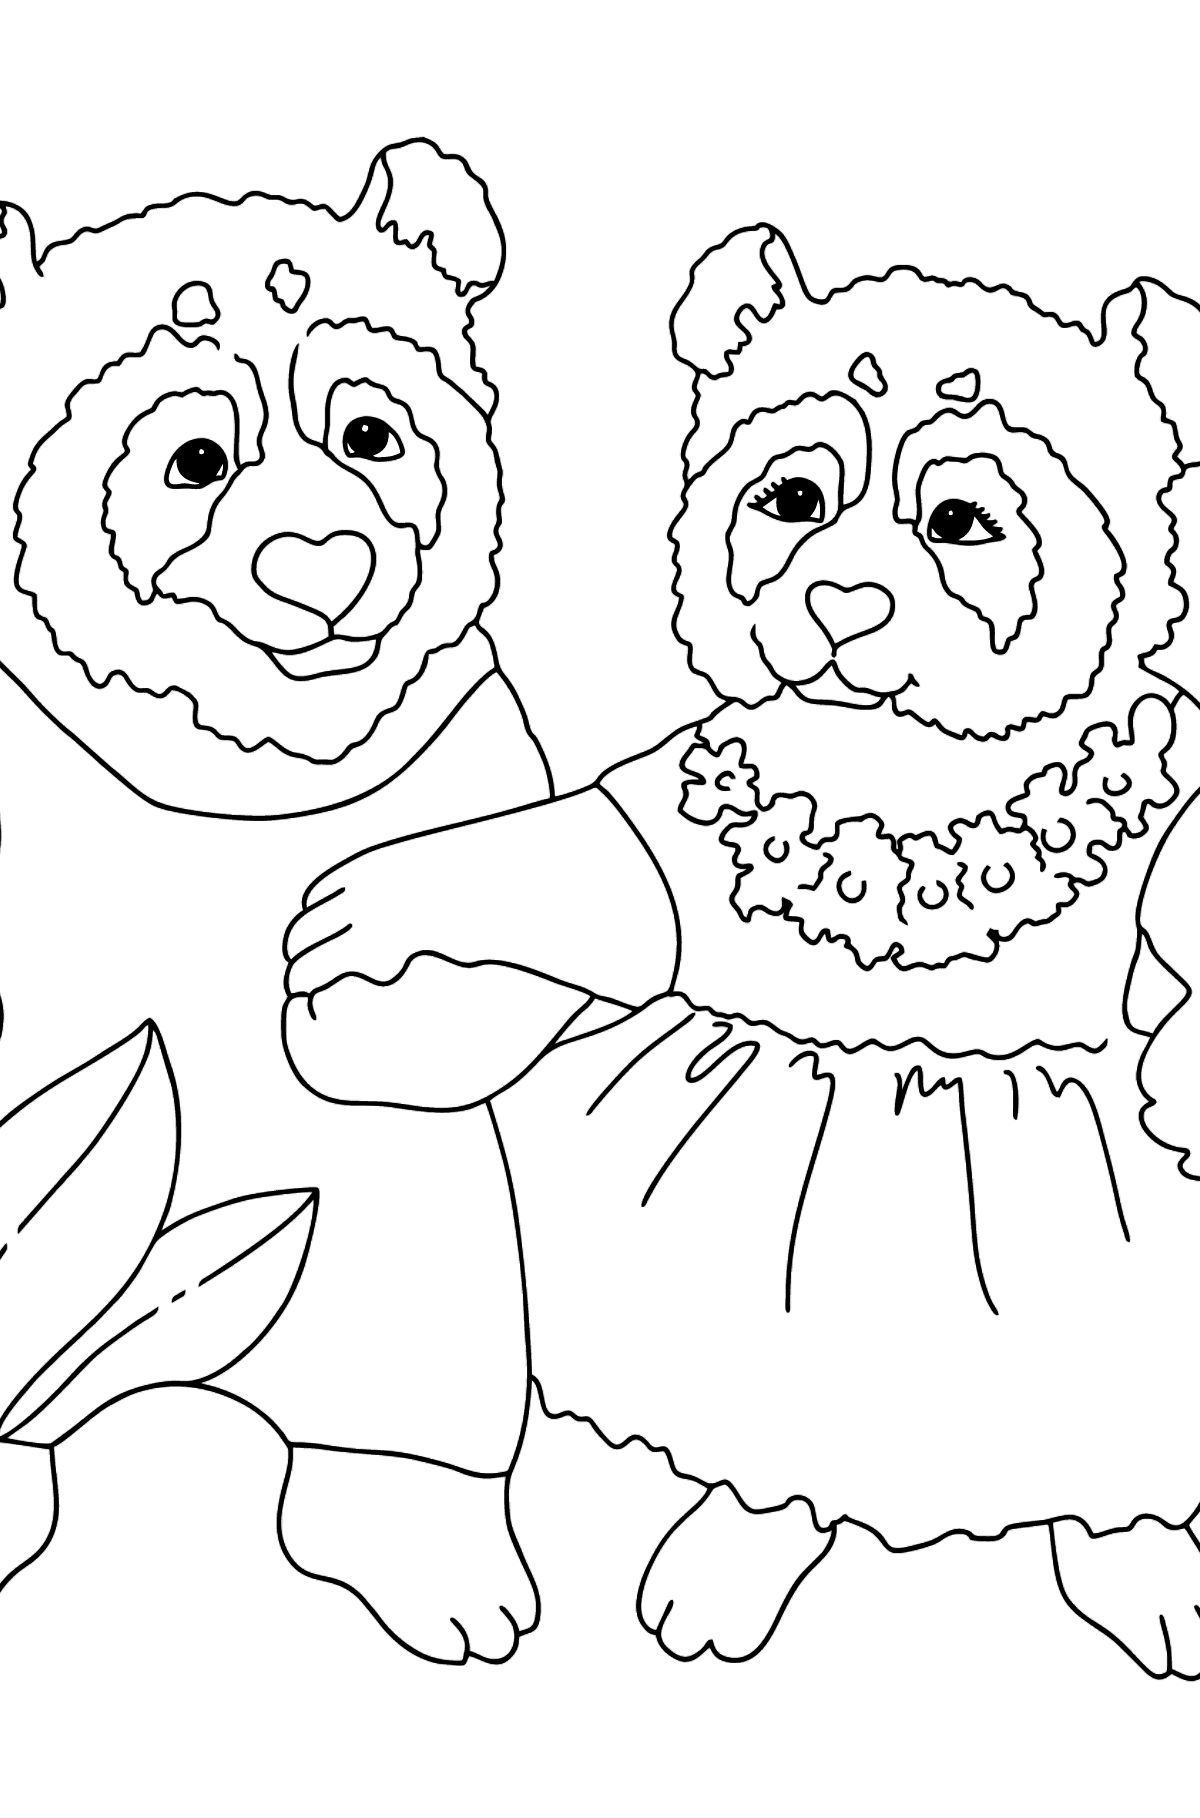 Tegning til fargelegging panda bilde - Tegninger til fargelegging for barn